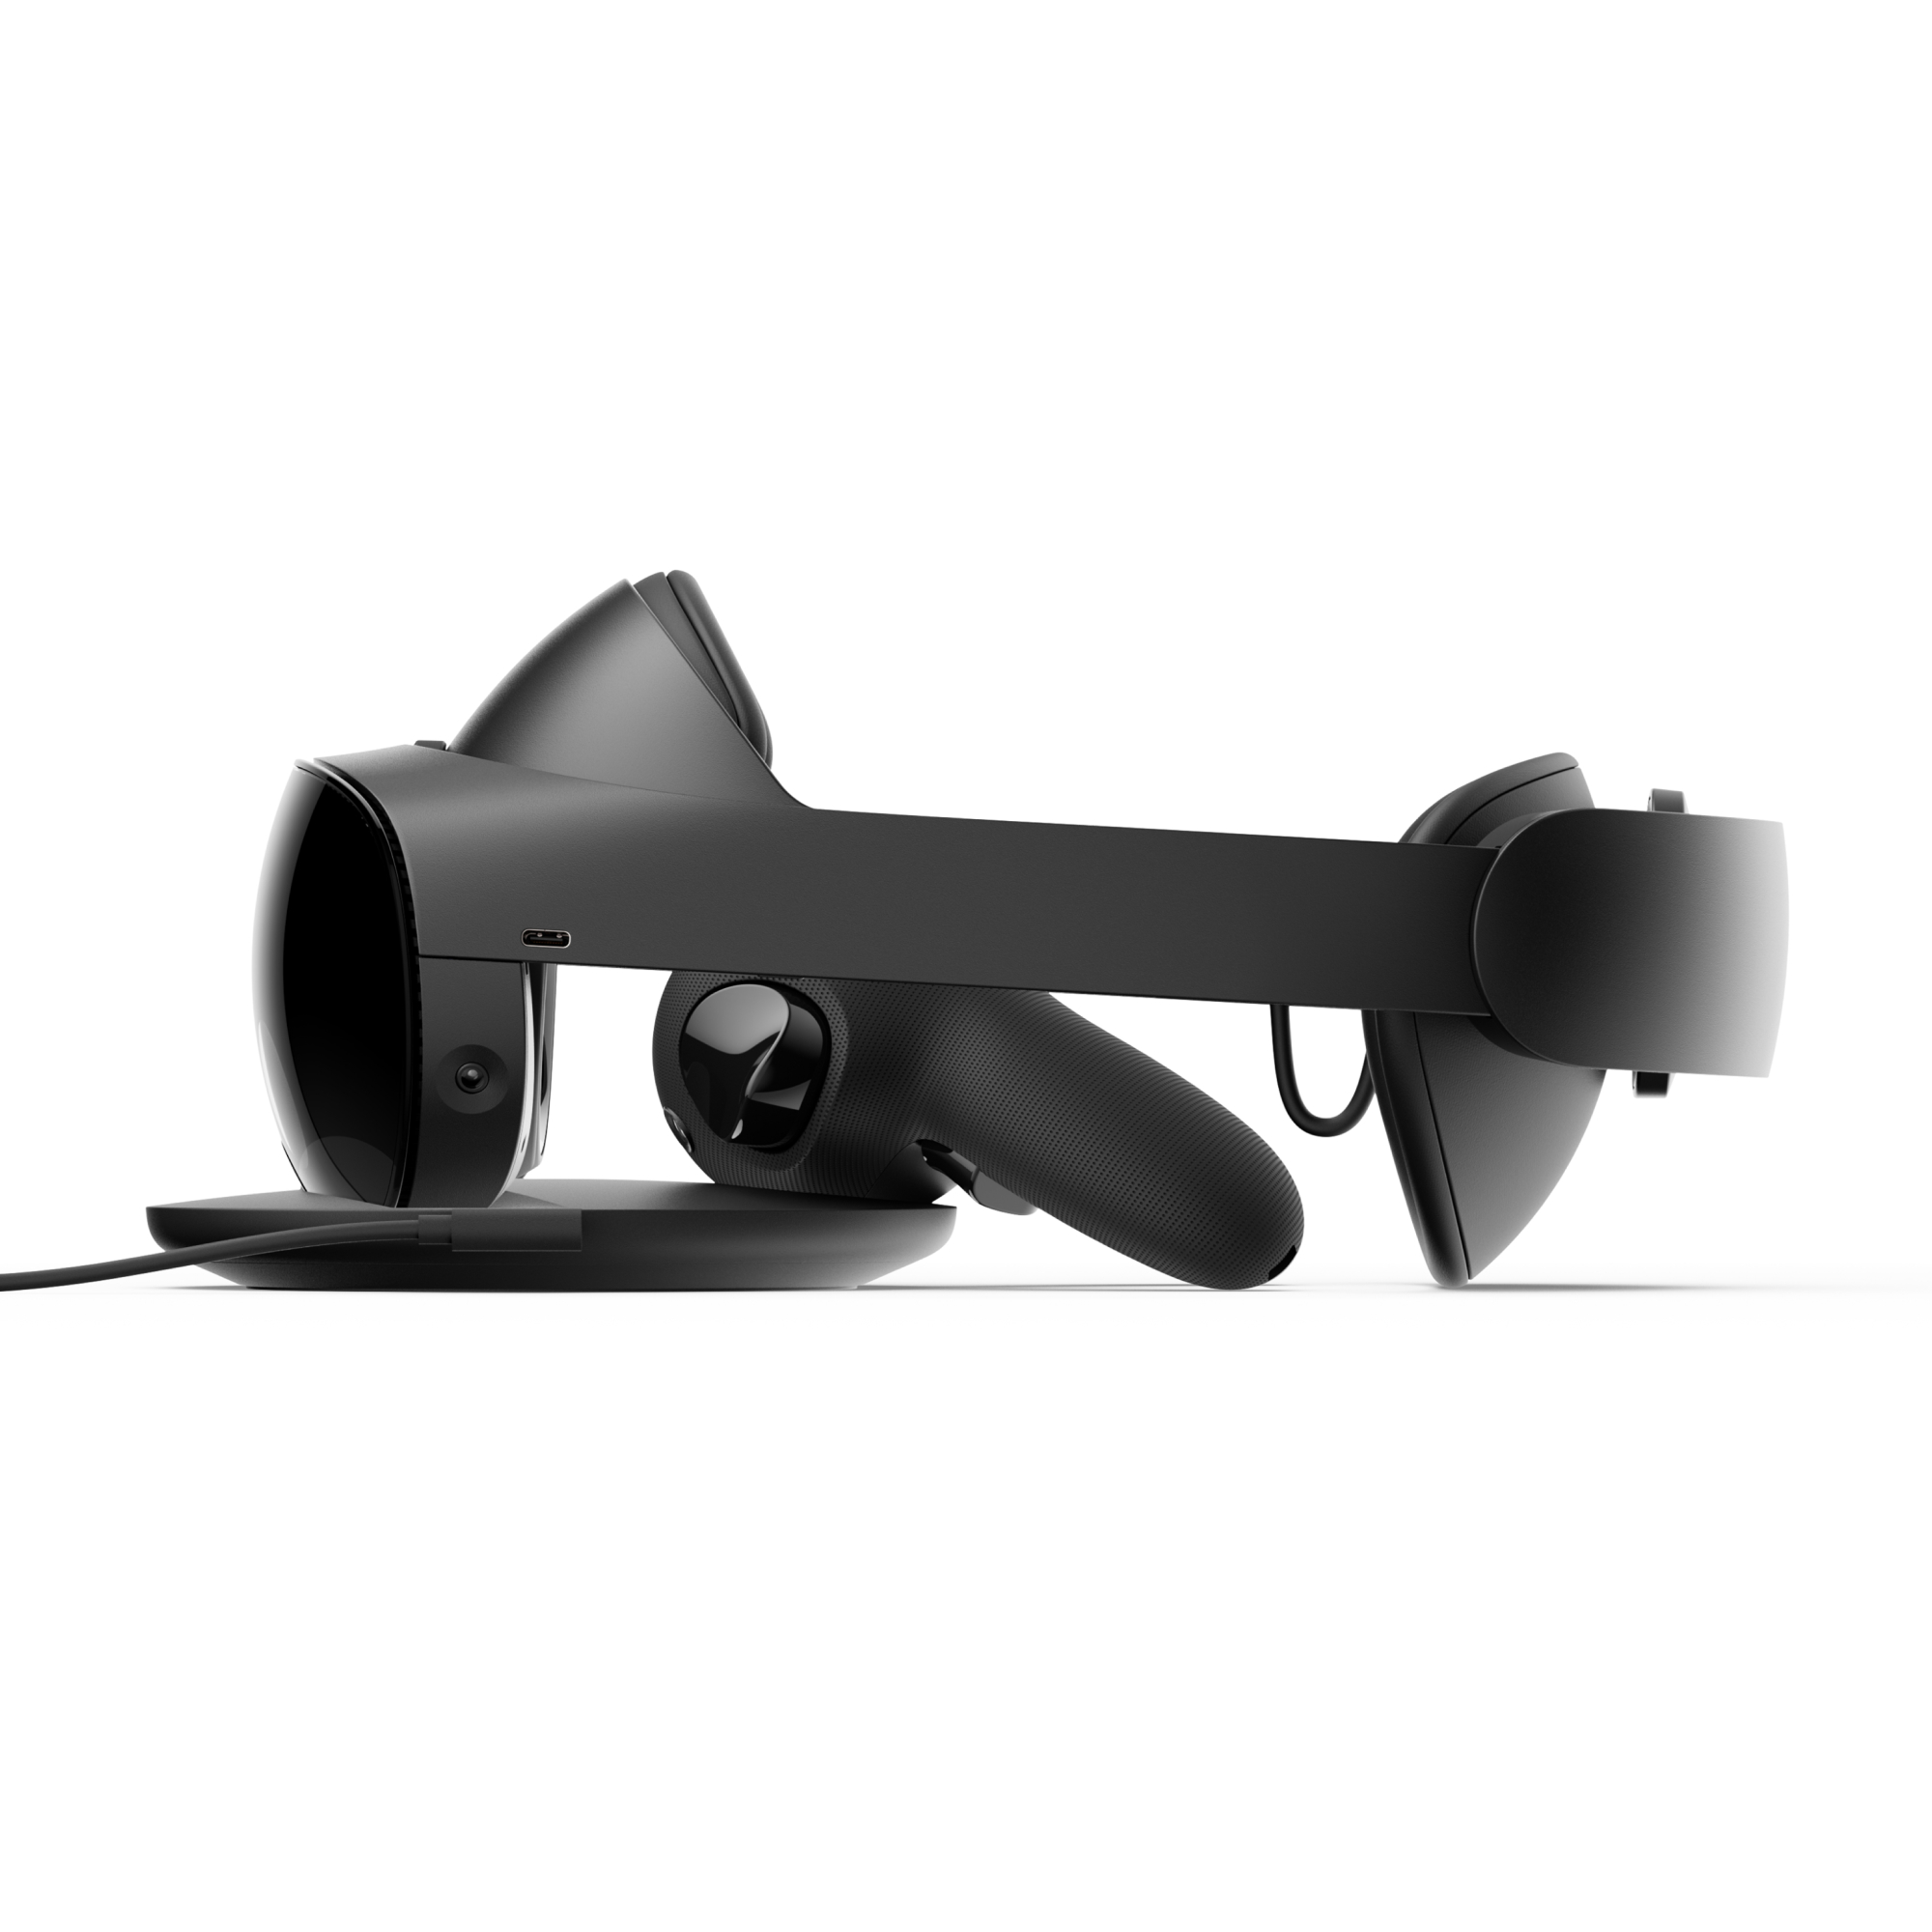 Meta Quest Pro — Premium MR/VR Headset — Featuring Ergonomic Design and Advanced Features - image 5 of 6